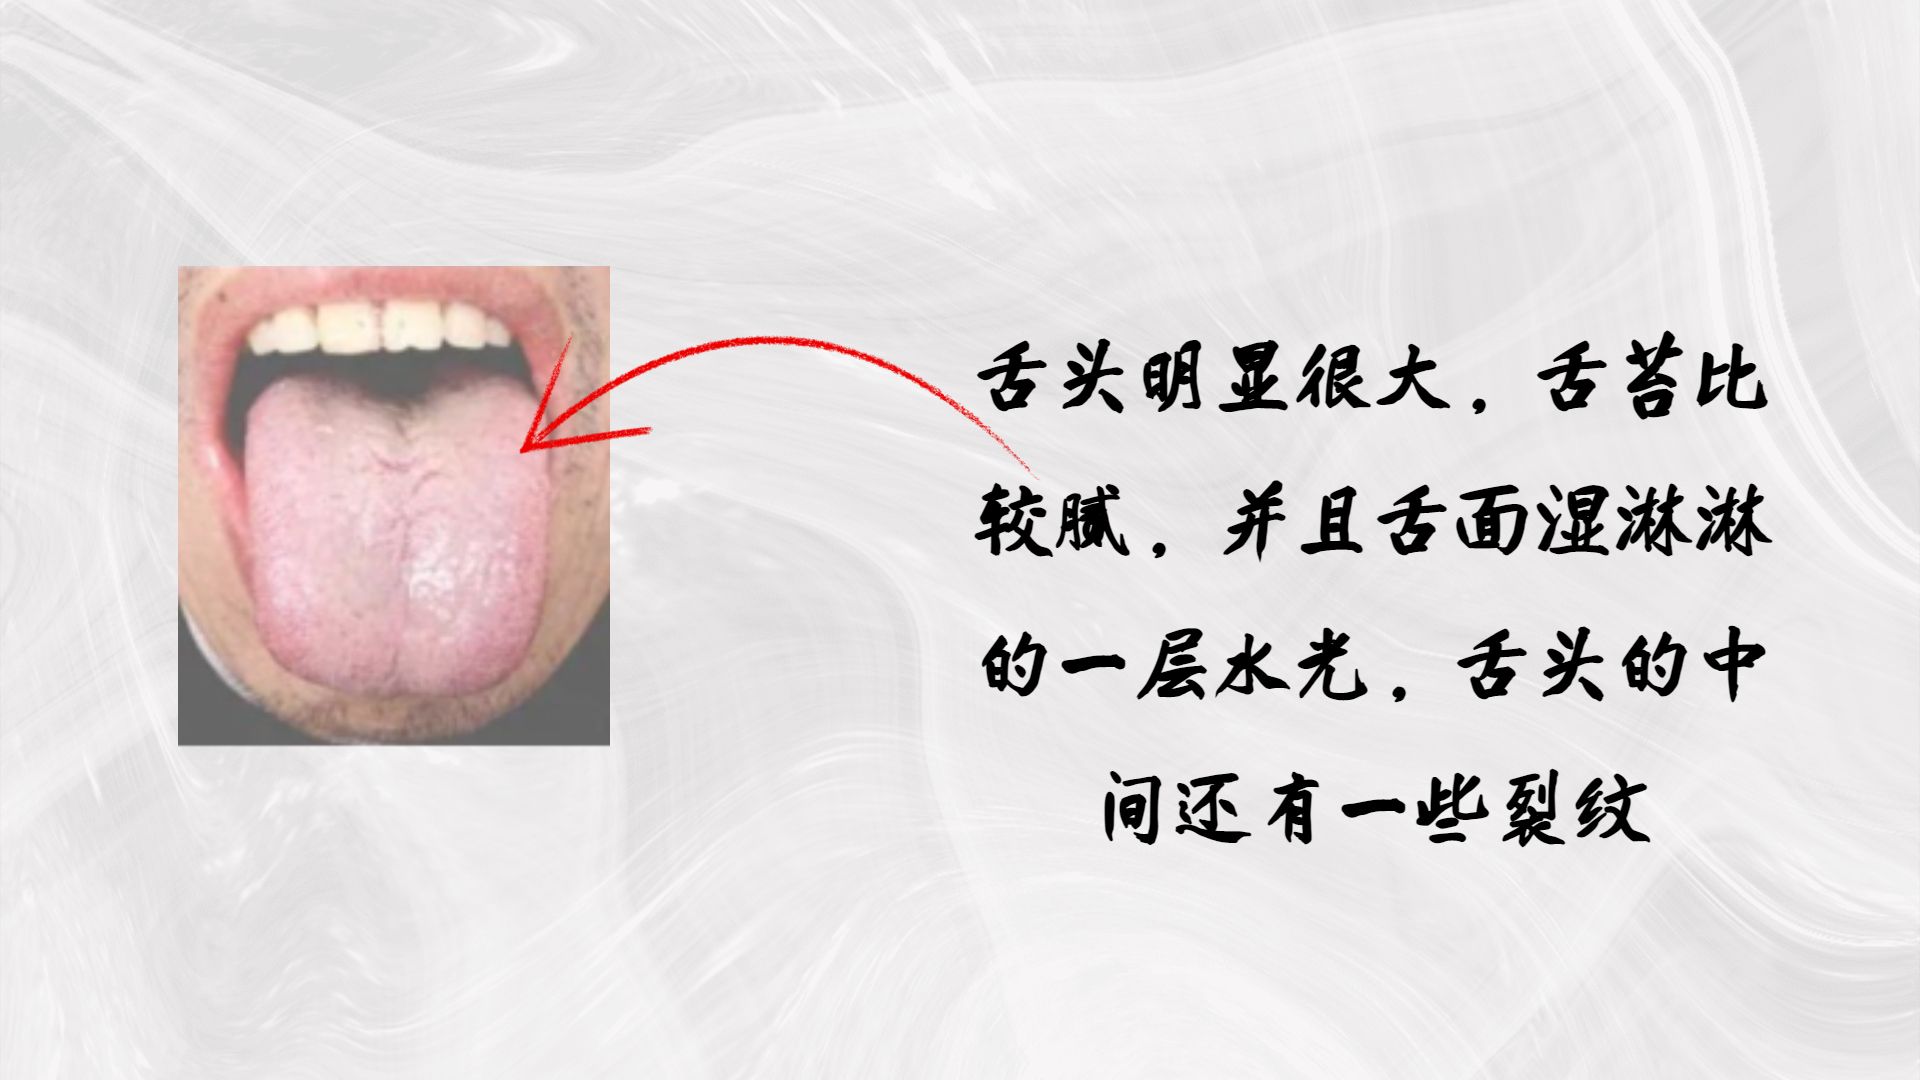 【实践分享】舌苔白厚、黑舌苔、地图舌、裂纹、锯齿、齿痕、肥大、舌下青筋、口疮溃疡、唇色 | 安疗网